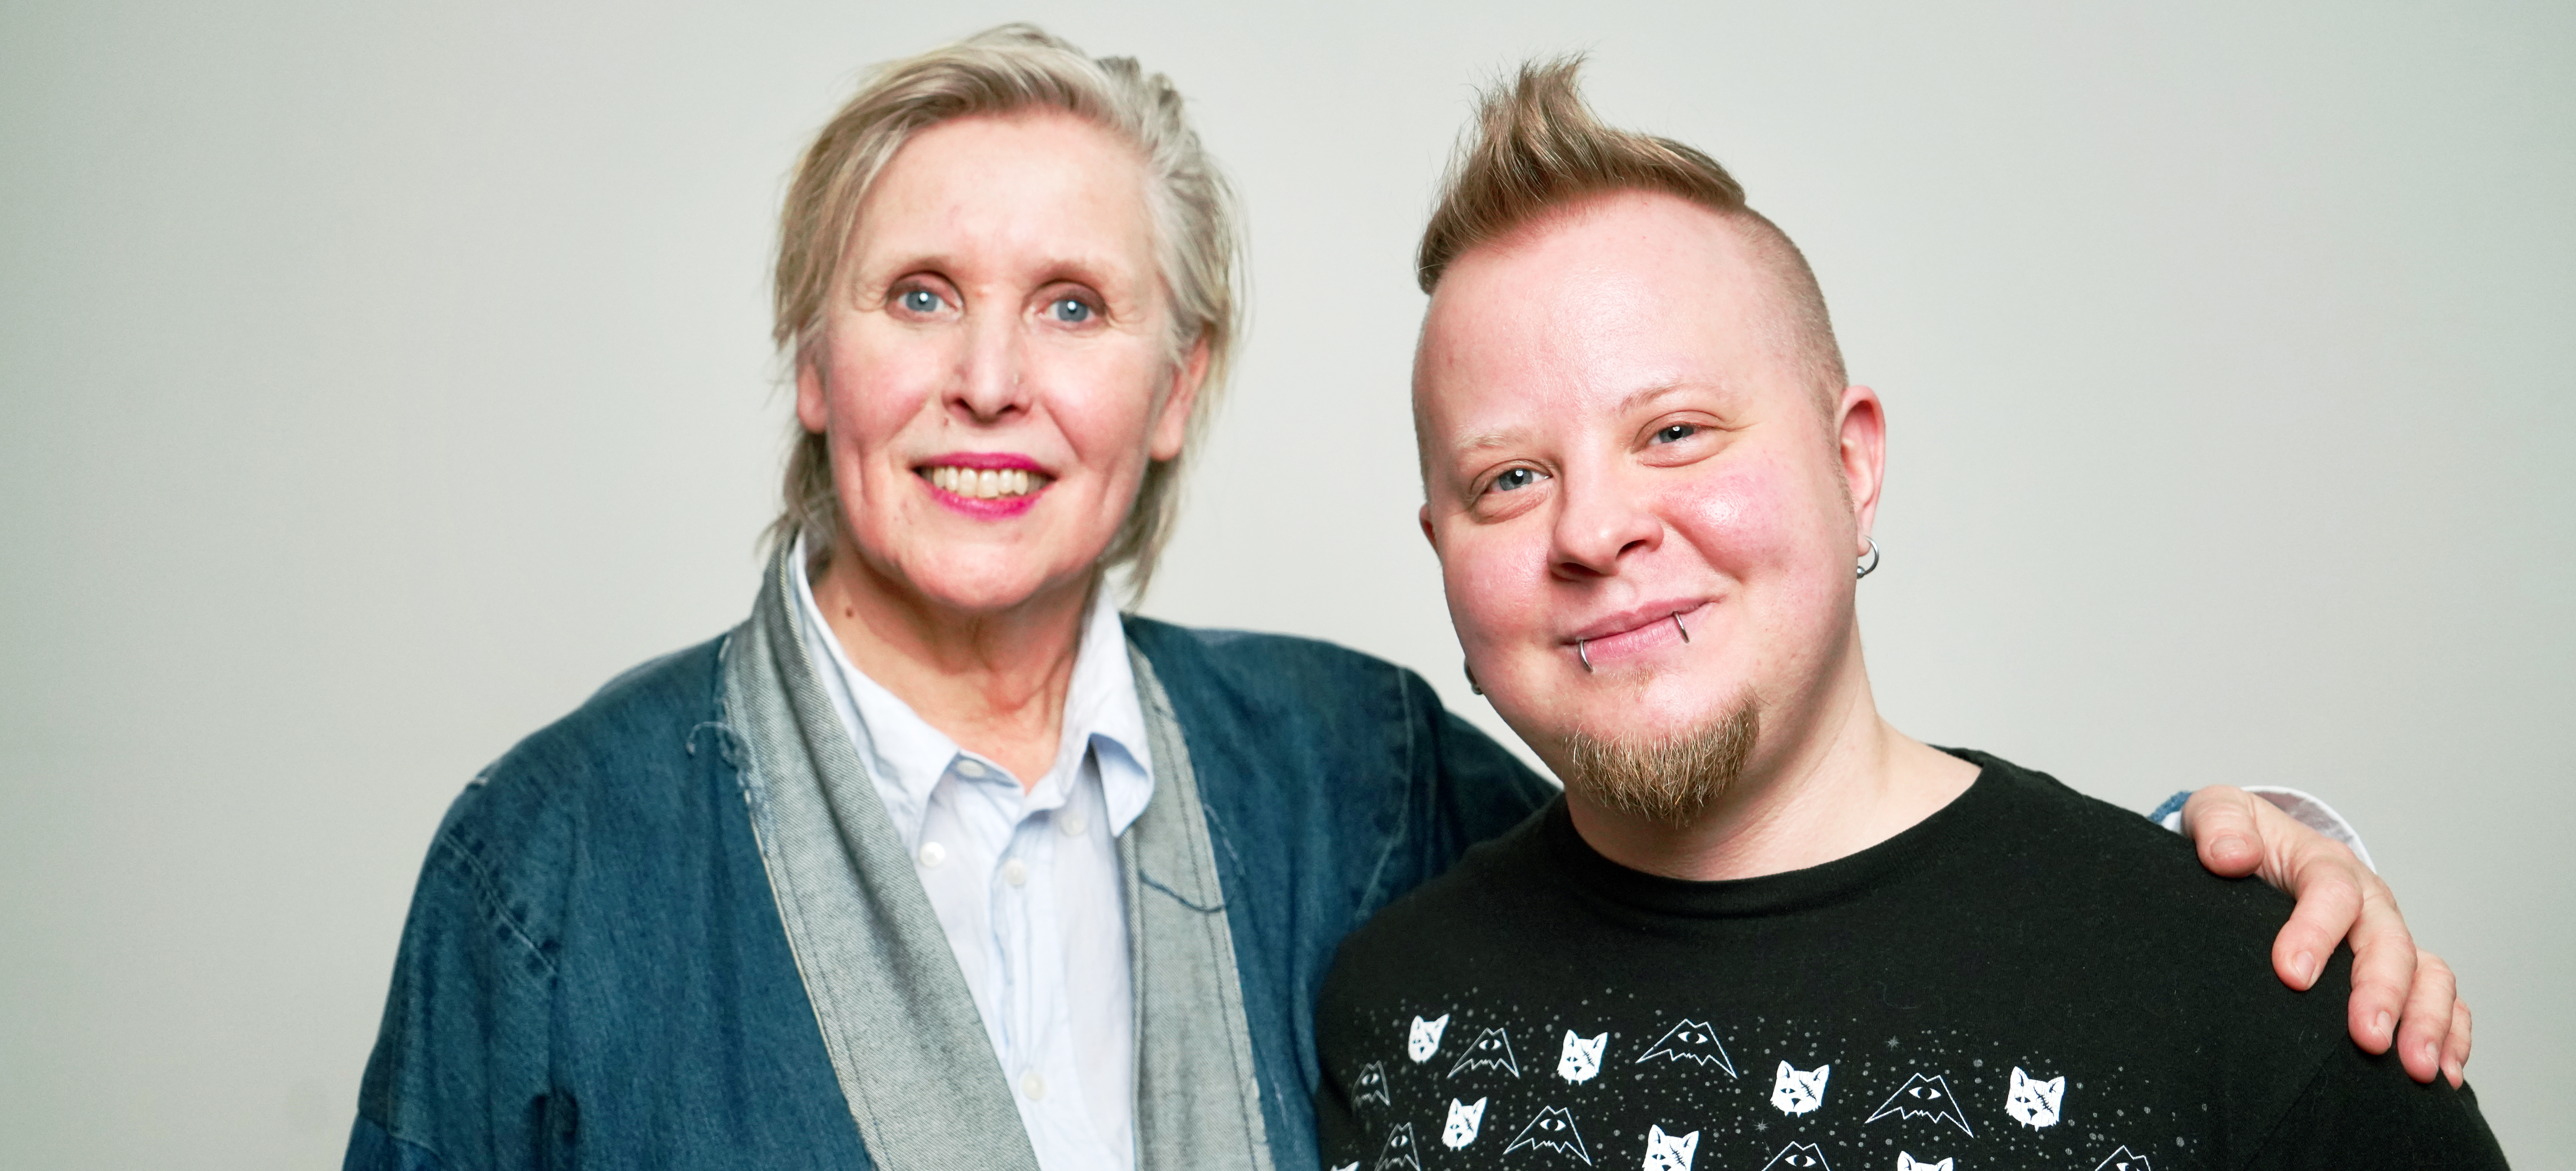 Lotte Nilsson Välimaa, konstnärlig handledare på Inuti, och Hugo Karlsson, konstnär.